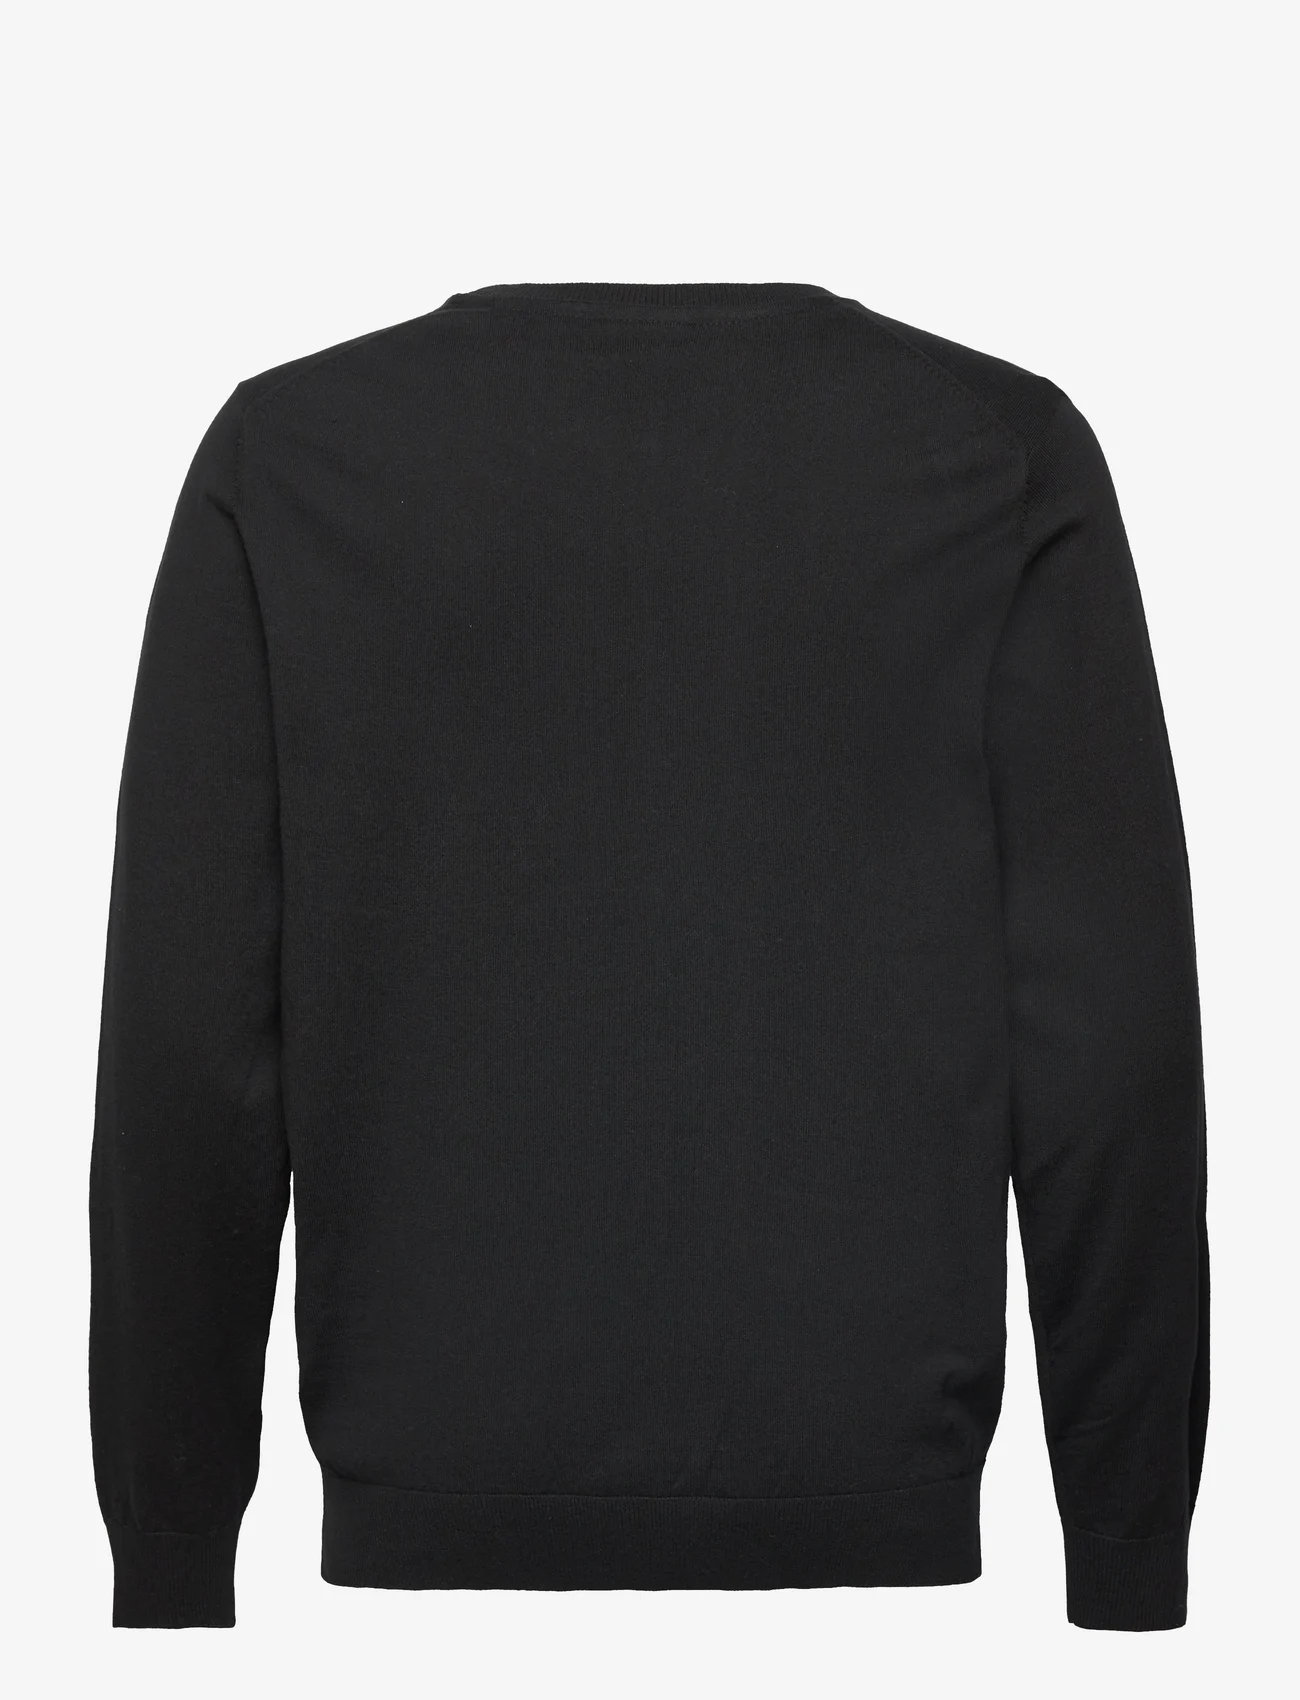 Lindbergh - Knitted O-neck sweater - strik med rund hals - black - 1